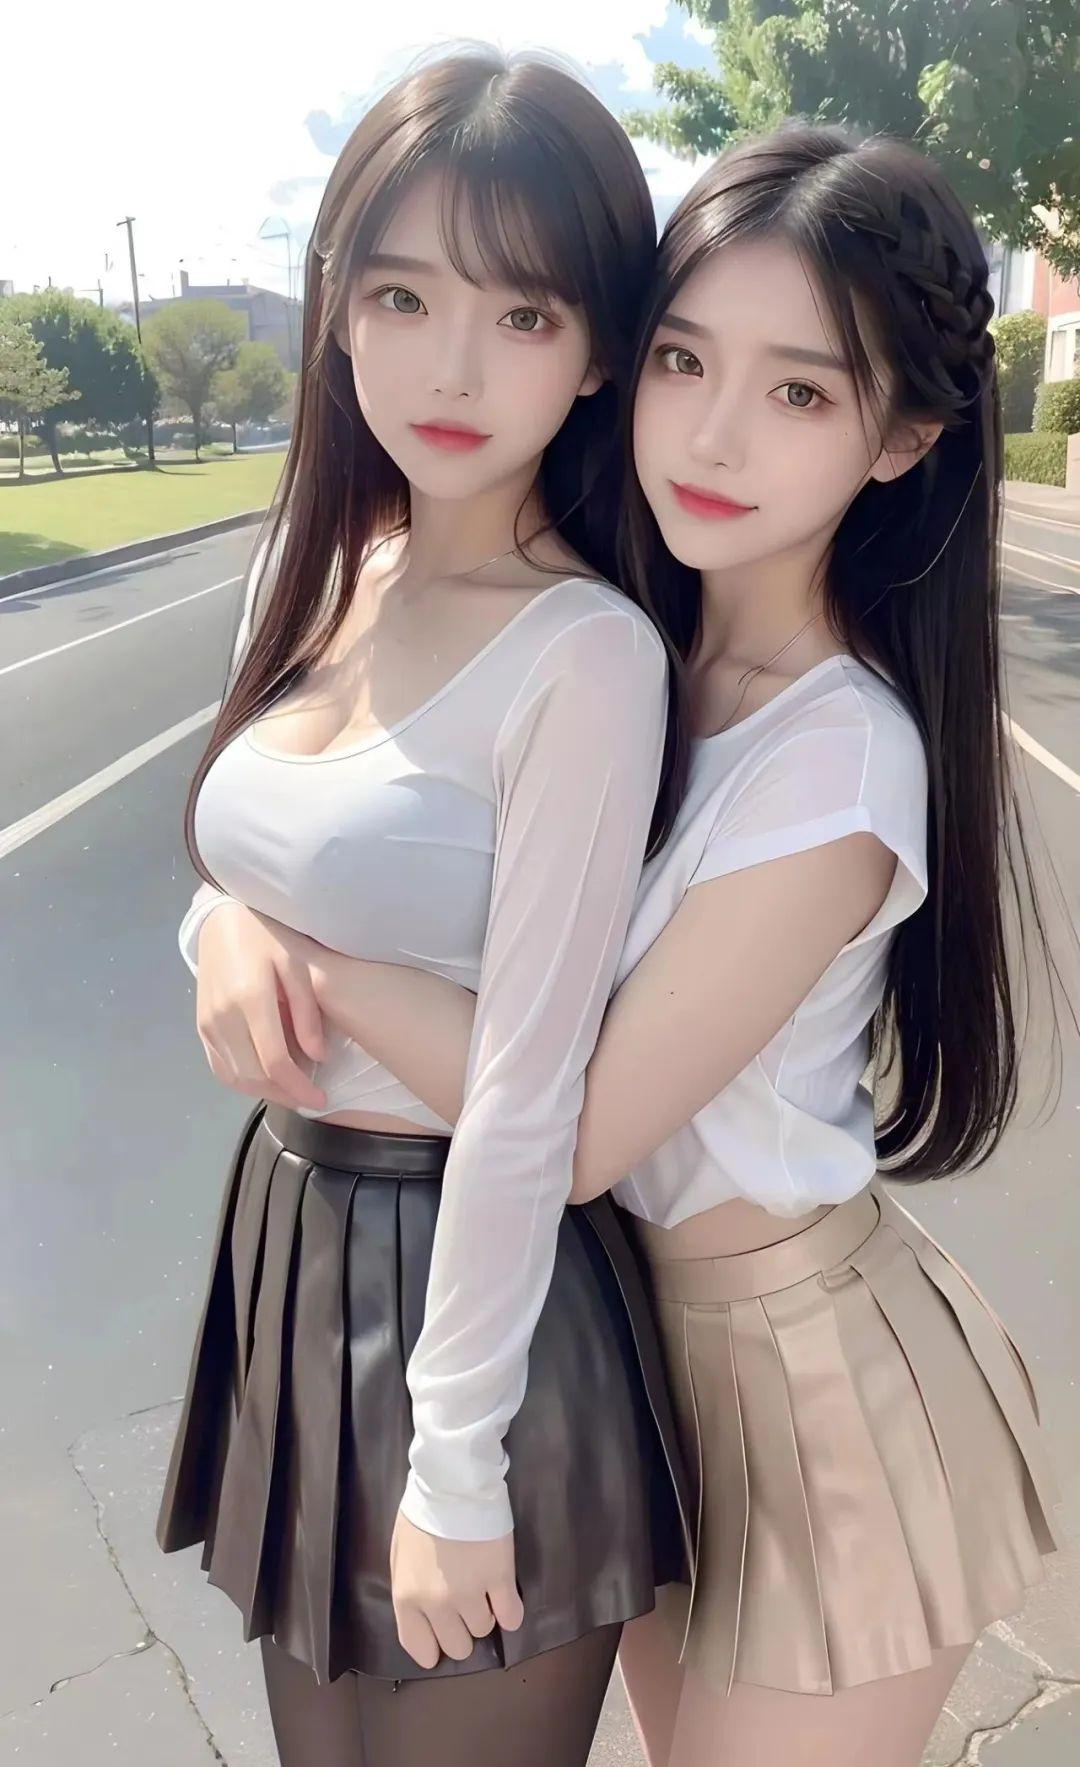 极品清纯甜美台湾双胞胎姐妹花清新外拍 - 私图网